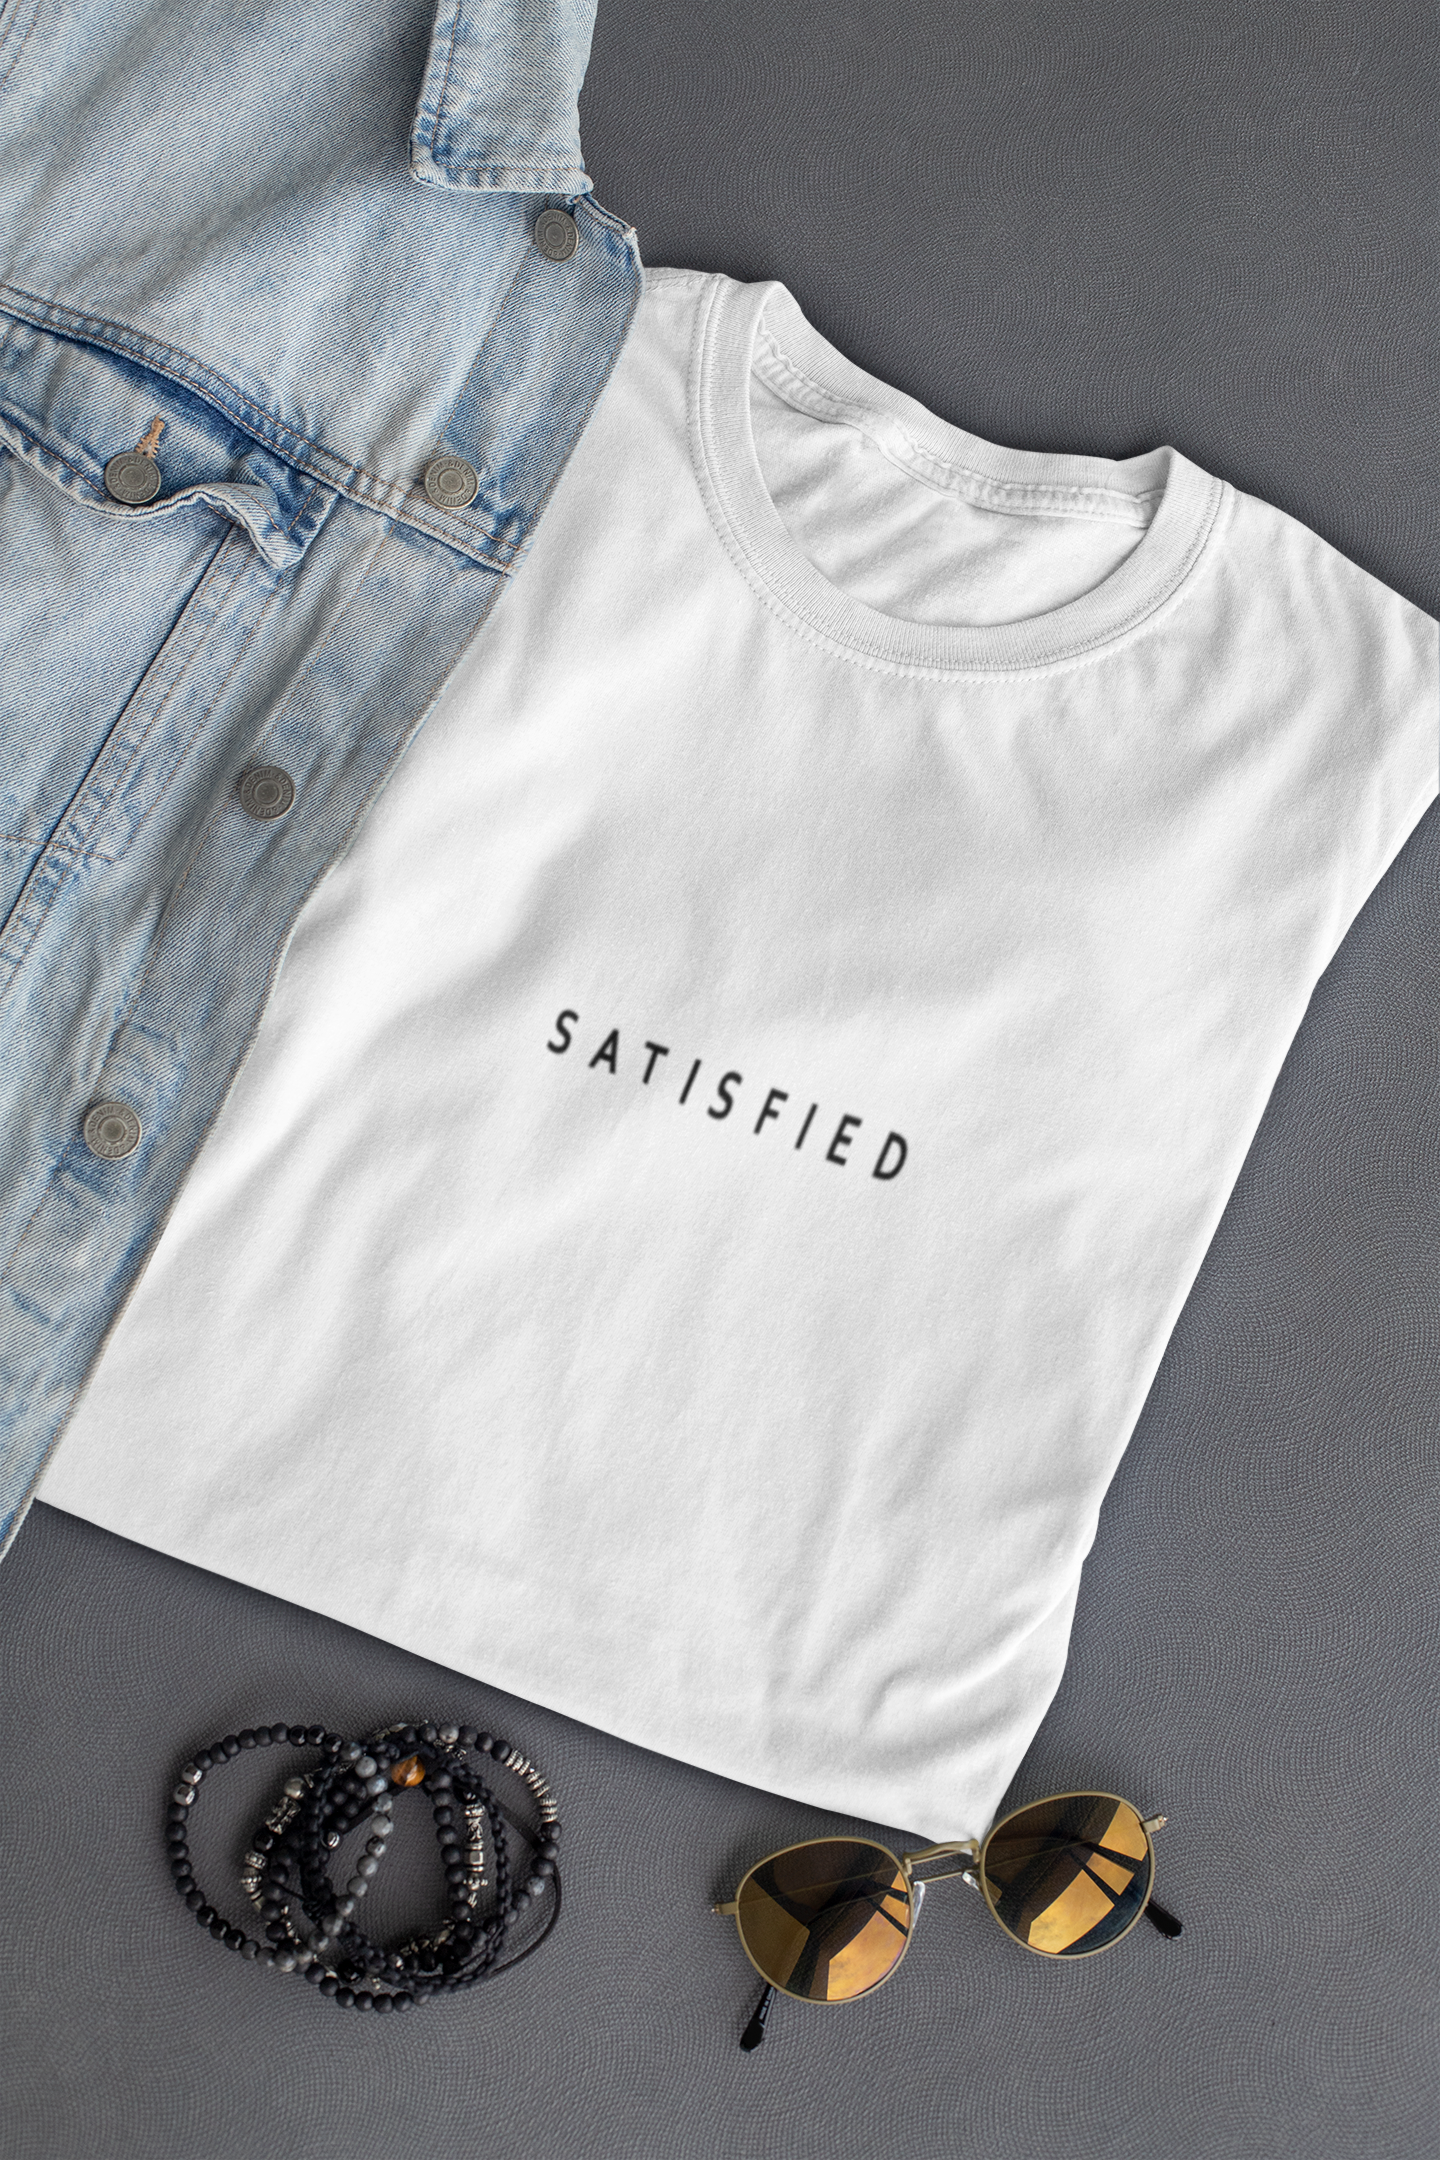 Satisfied Minimal Women Half Sleeves T-shirt- FunkyTeesClub